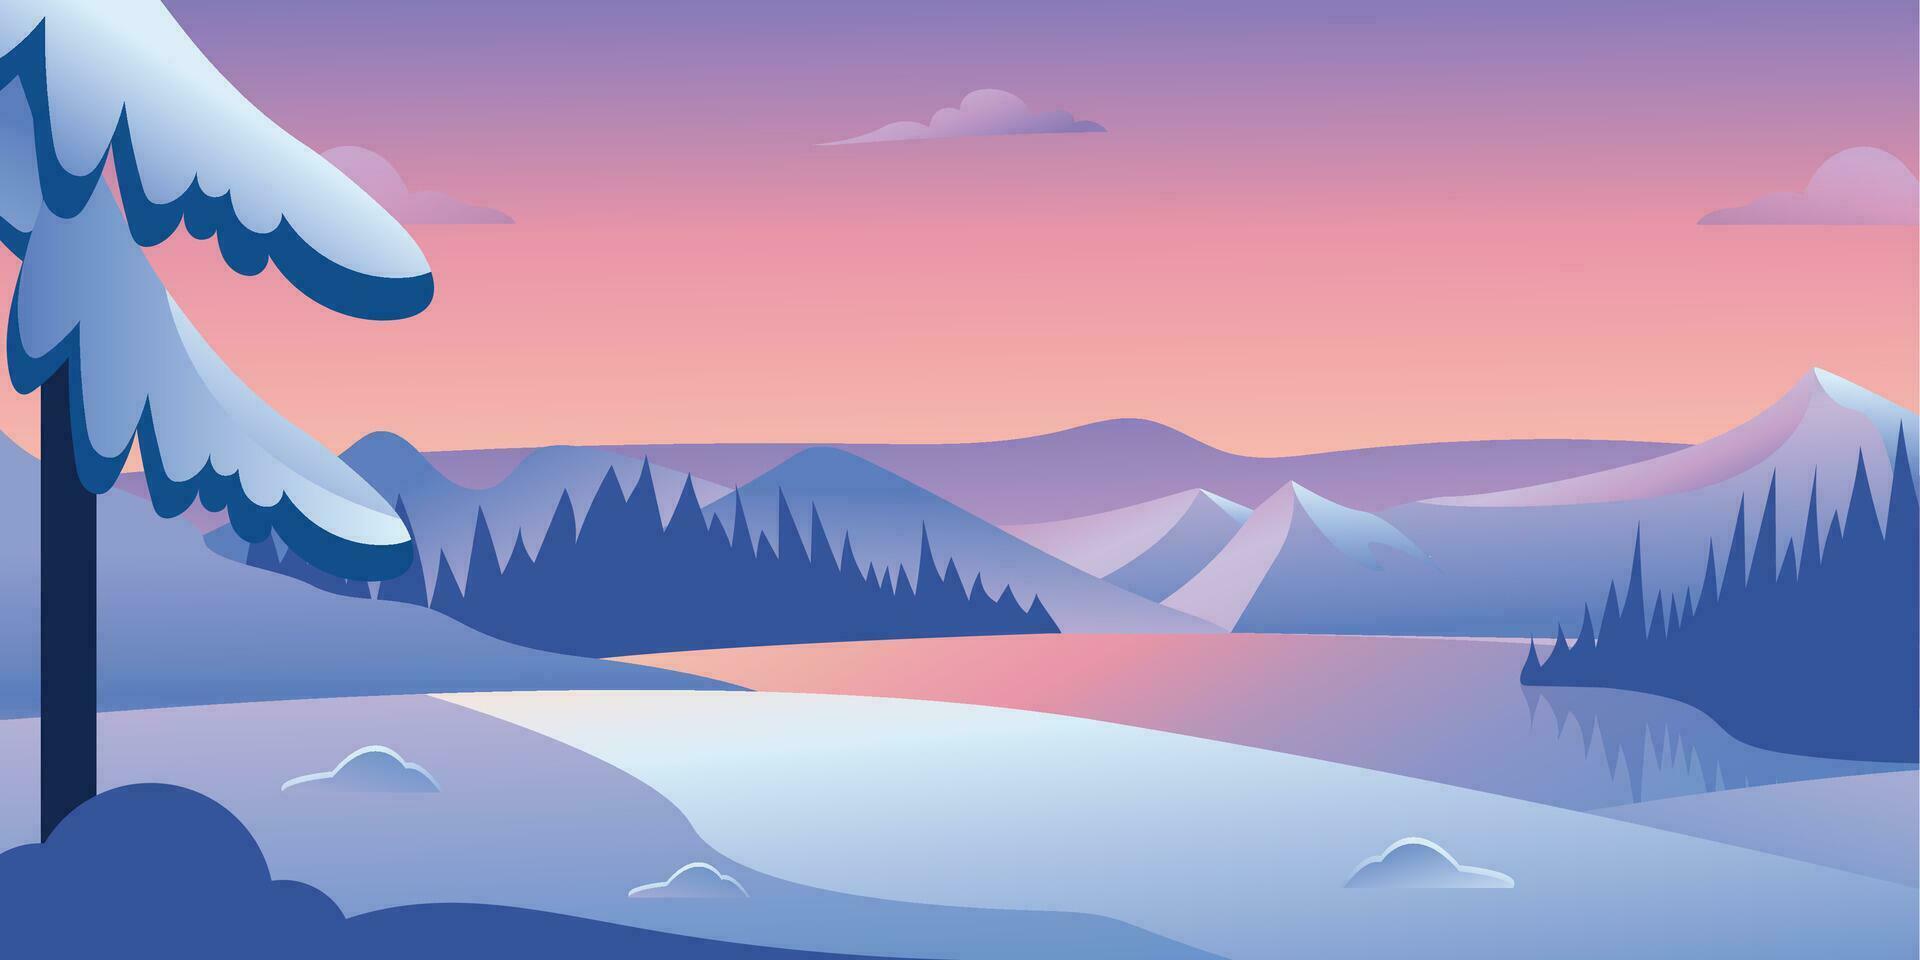 Vektor Illustration von ein schneebedeckt Winter Landschaft beim Sonnenuntergang mit Kiefer Bäume, Berge und See